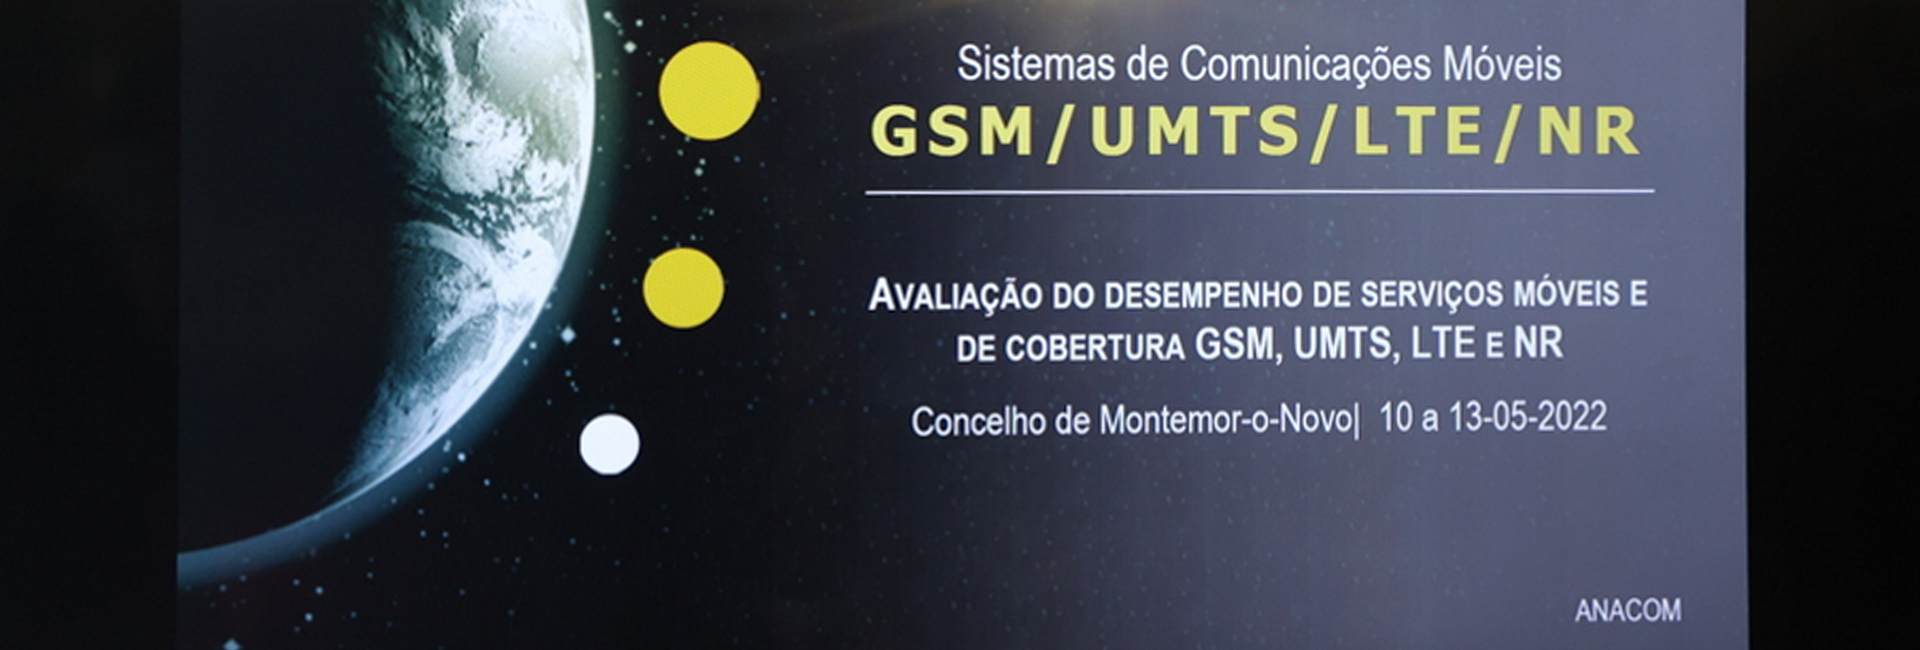 ANACOM apresenta estudo de qualidade de serviço das redes móveis em Montemor-o-Novo